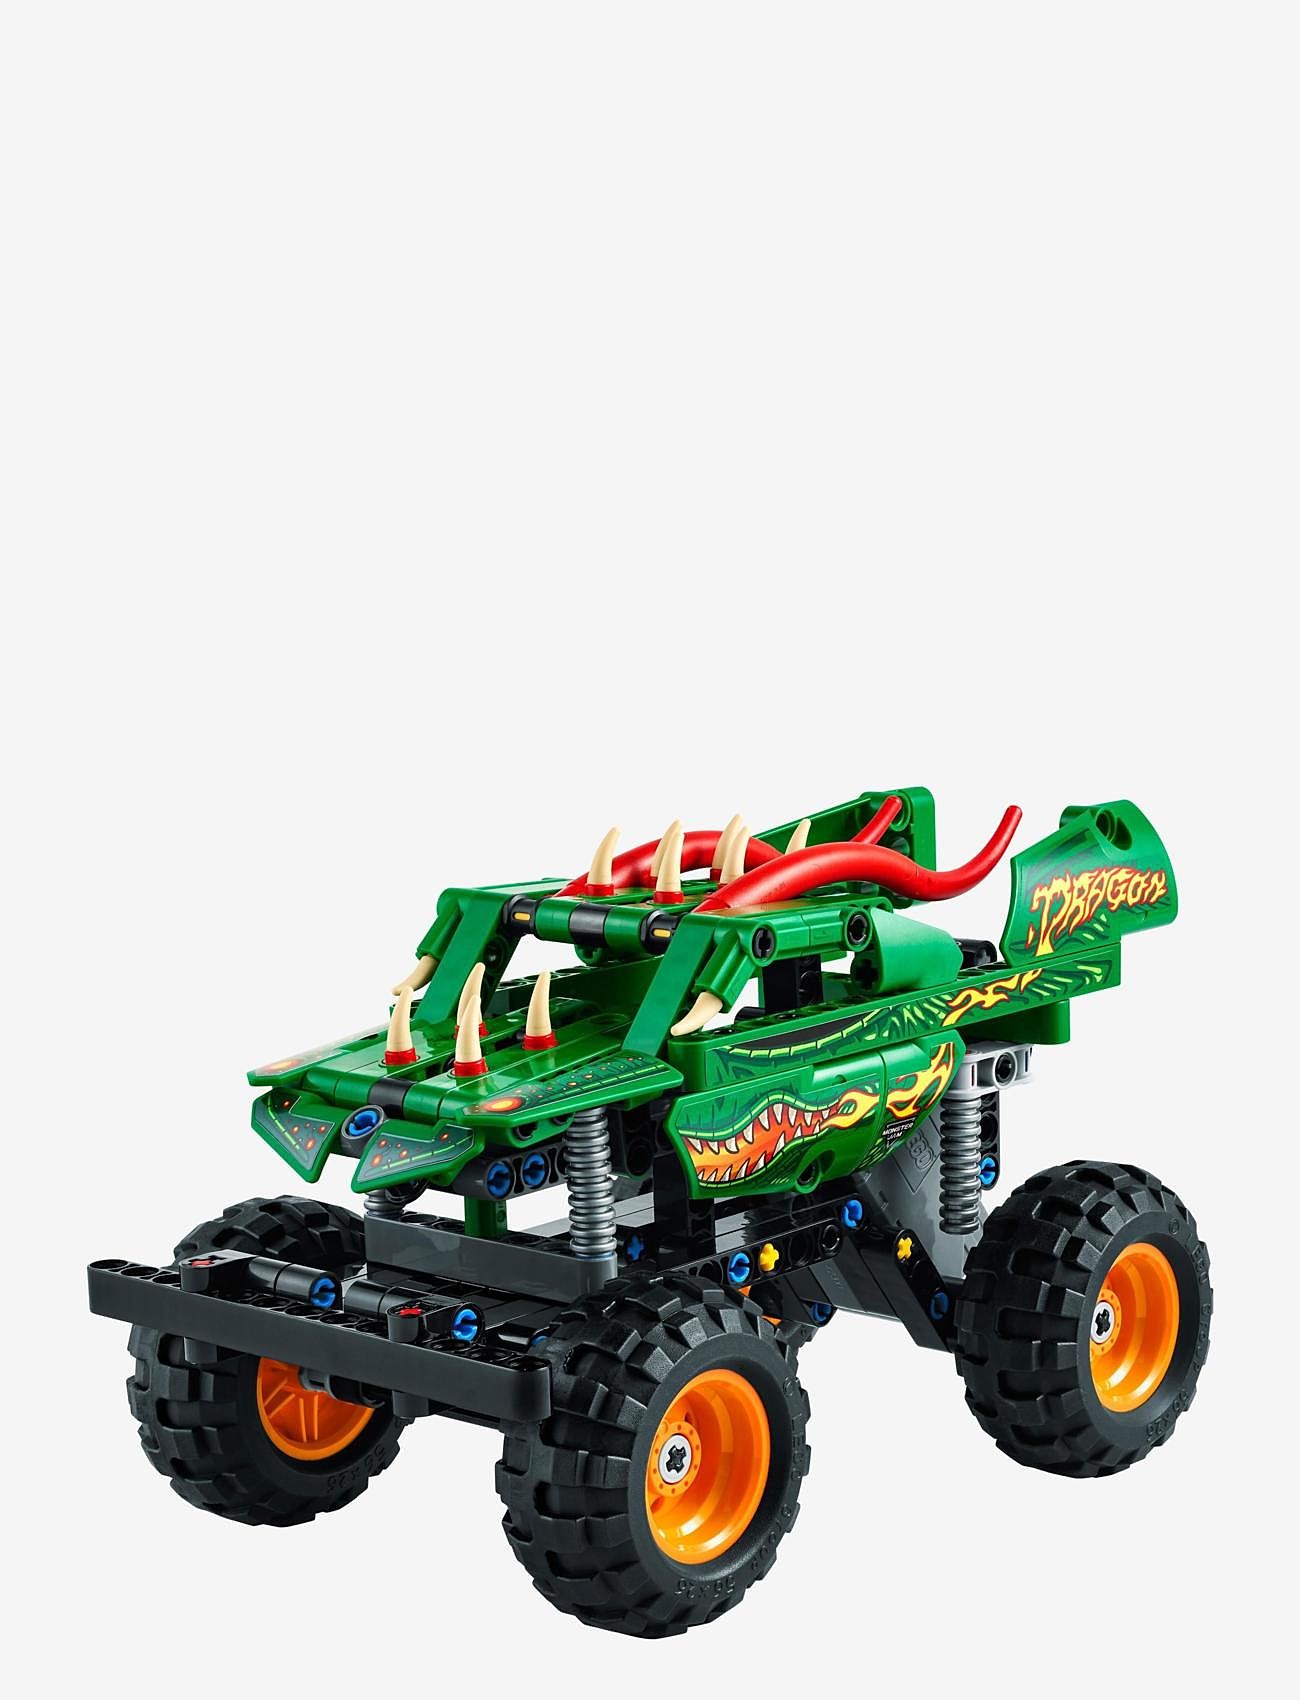 LEGO - Monster Jam Dragon 2in1 Monster Truck Toy - lego® technic - multicolor - 1